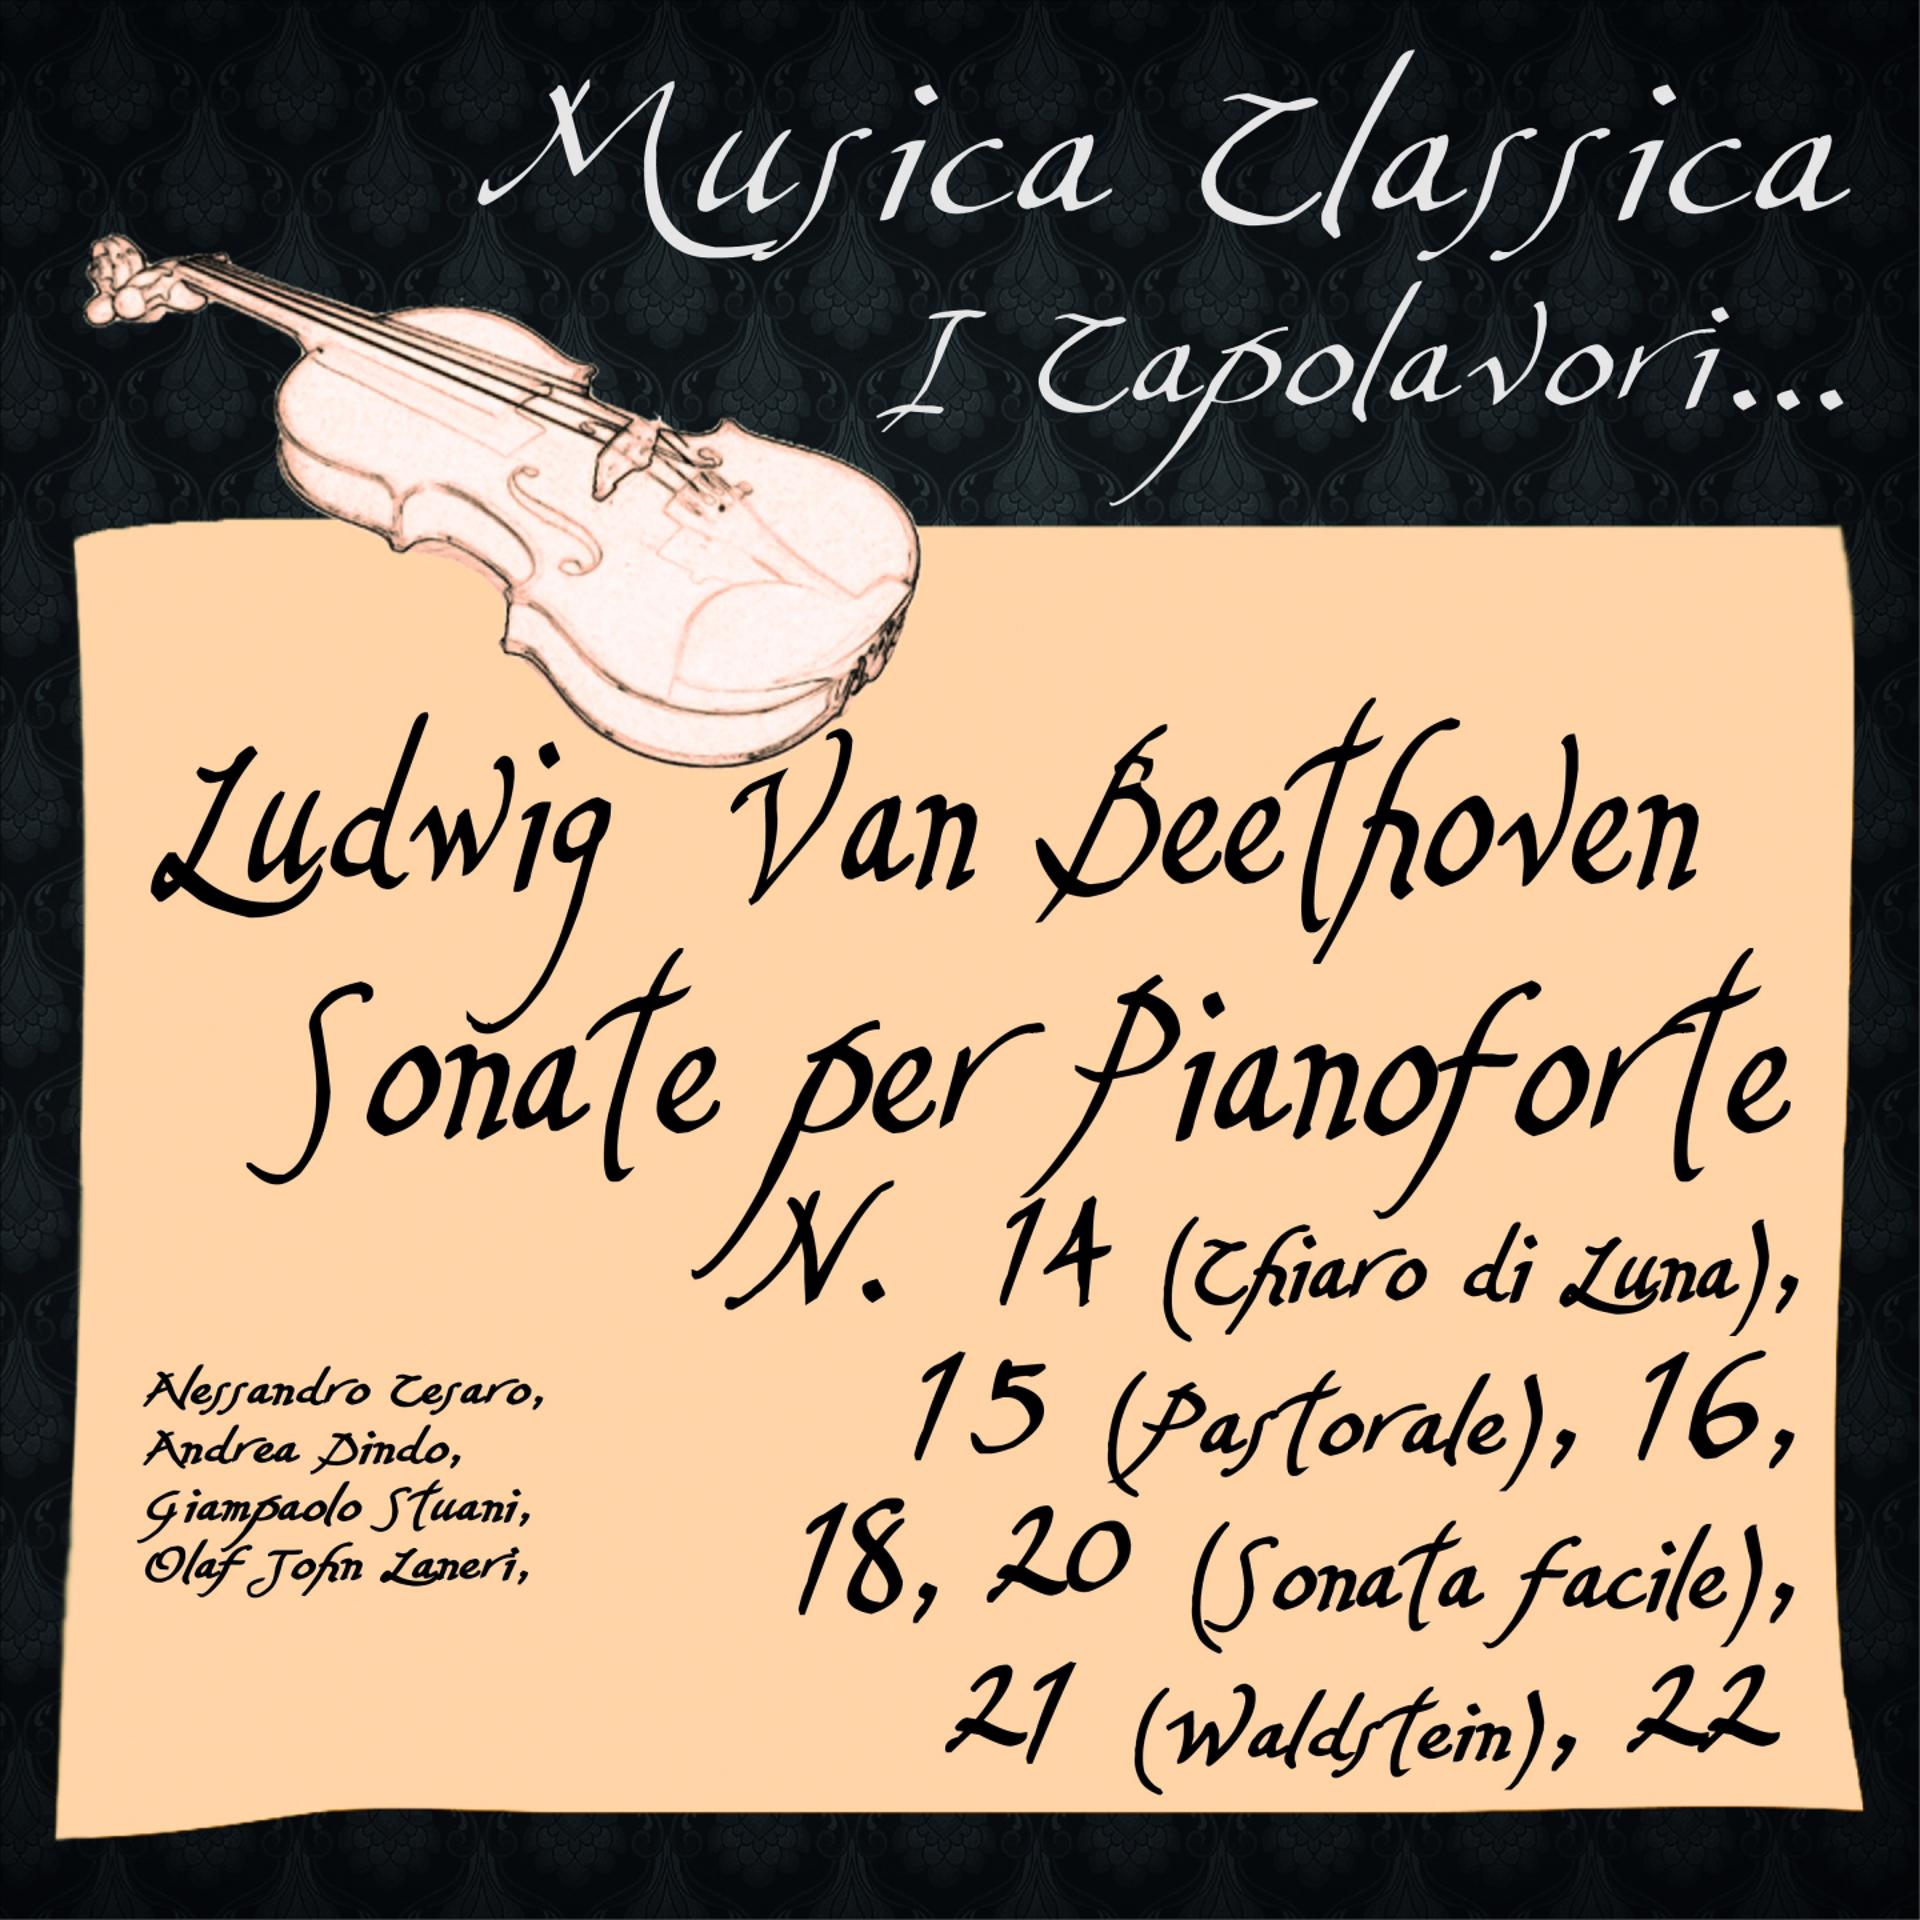 Постер альбома Beethoven:  Sonate per Pianoforte, No. 14 "Chiaro di Luna", 15 "Pastorale", 16 , 18, 20 "Sonata facile", 21 "Waldstein", 22